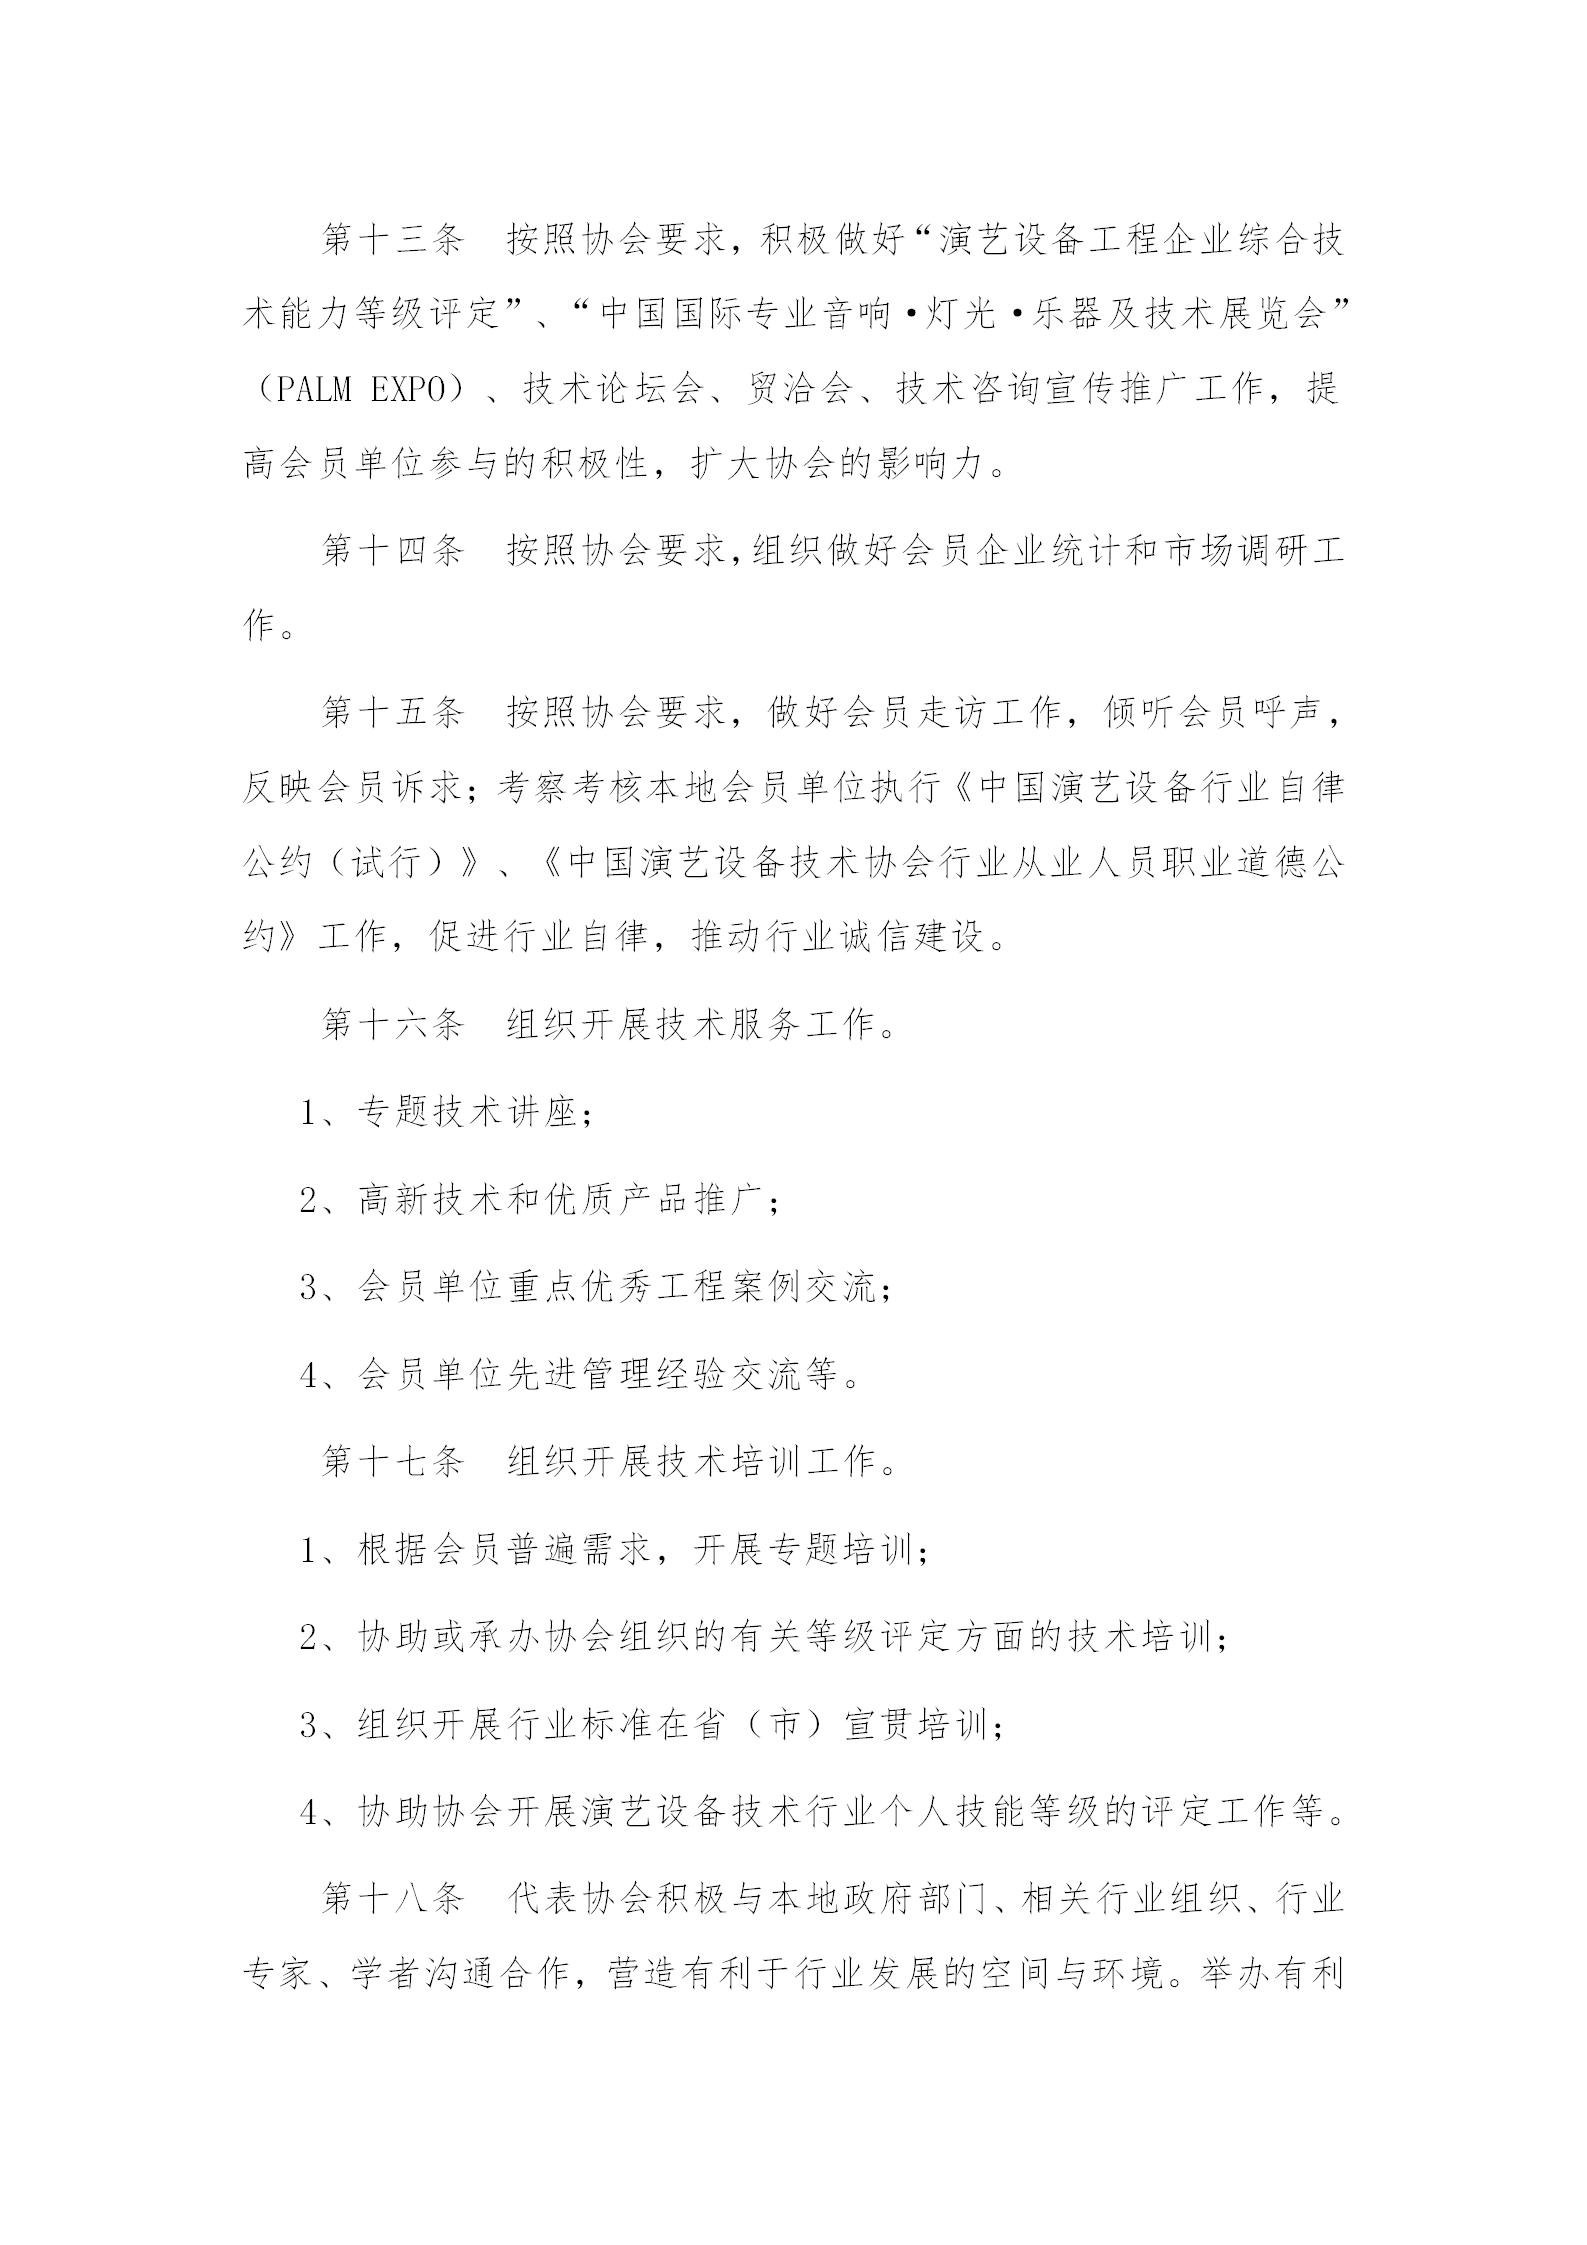 中国演艺设备技术协会办事处工作条例_03.jpg